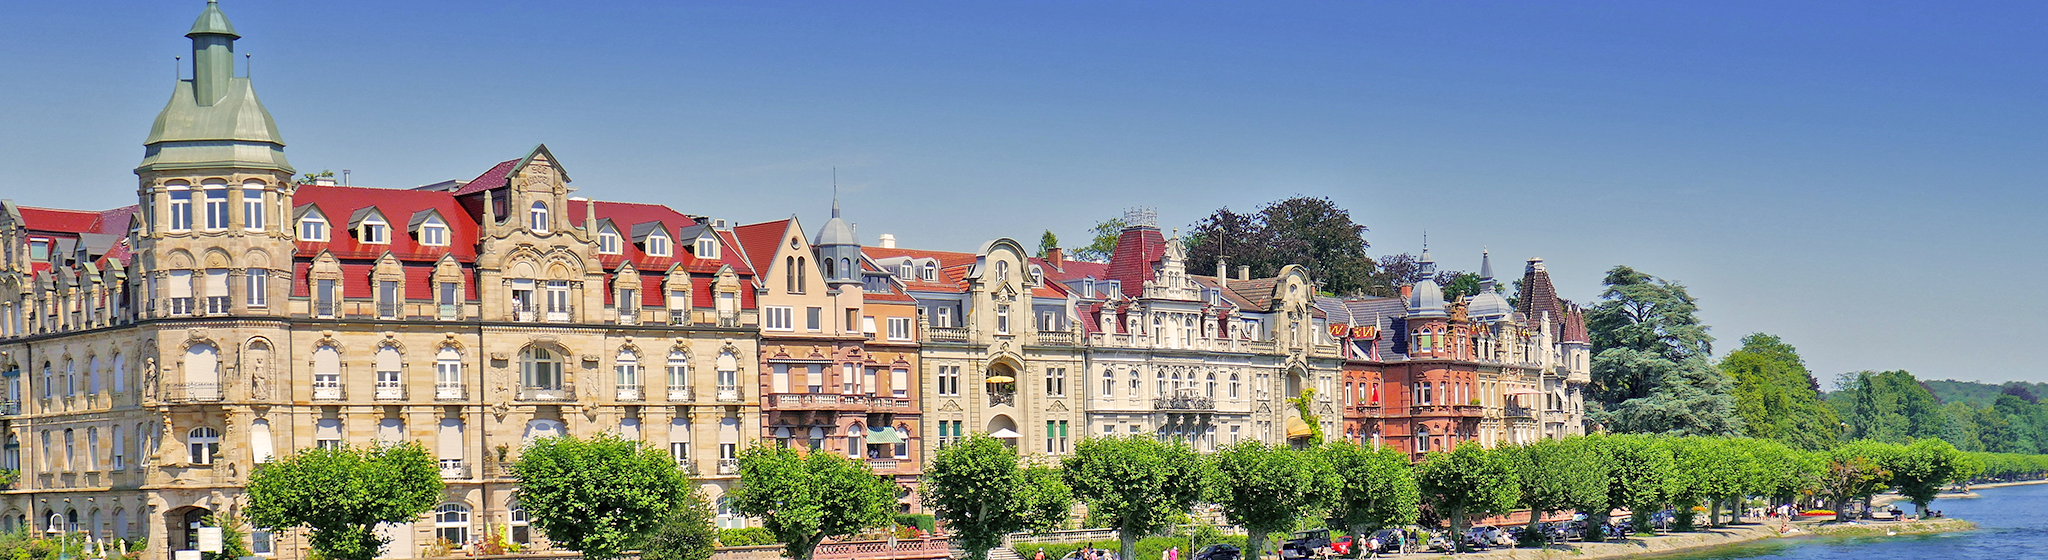 Ihr Immobilienmakler in Konstanz » GARANT Immobilien